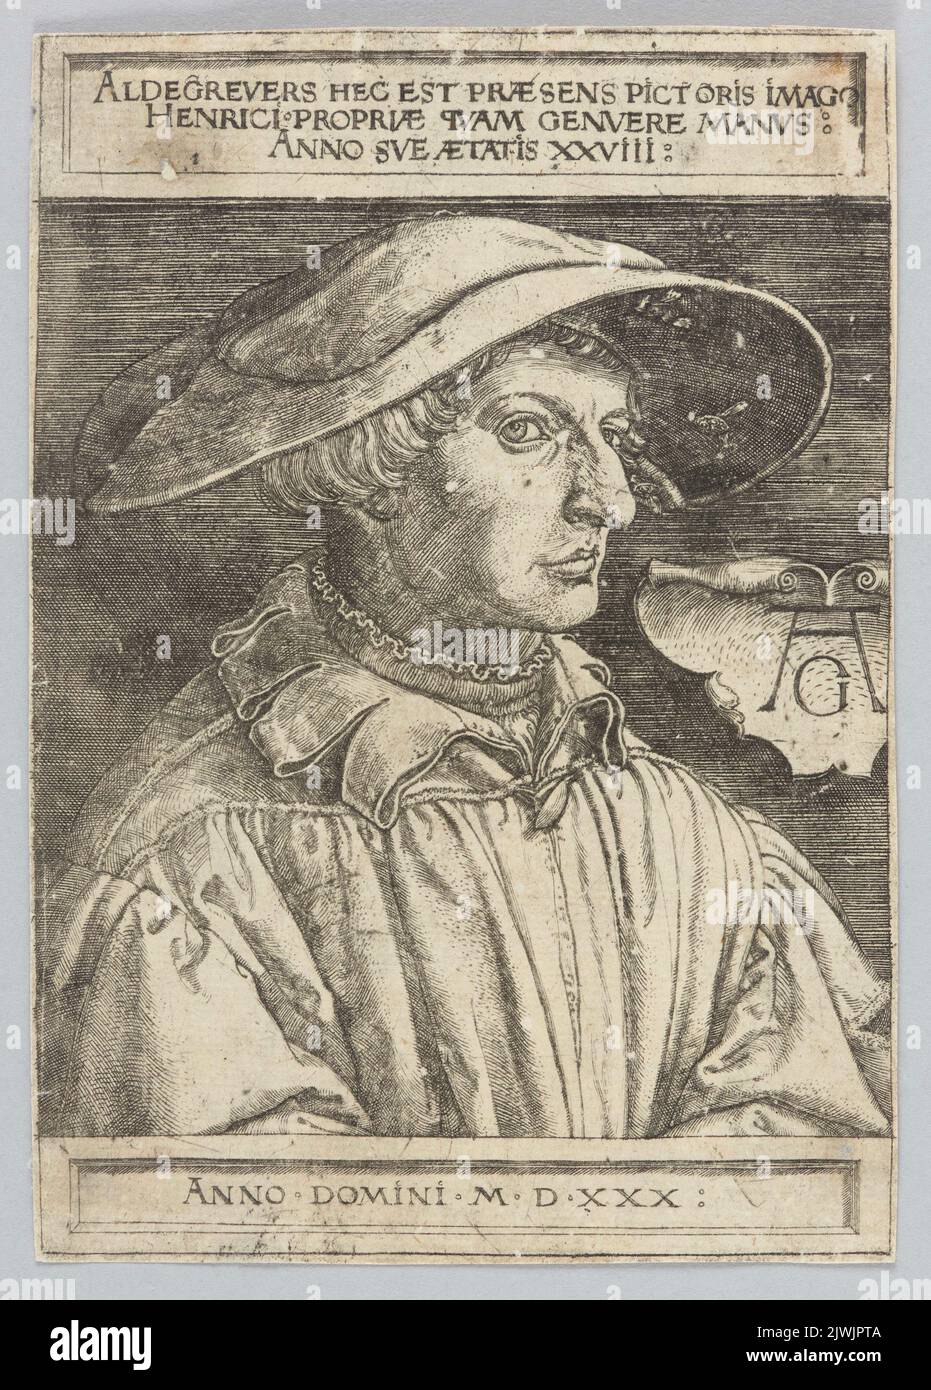 Self-portrait at the age of 28; Aldegrevers hec est praesens pictoris imago Henrici propriae quam genuere manus: Anno sue aetatis XXVIII. Aldegrever, Heinrich (1502-1555/1561), graphic artist Stock Photo